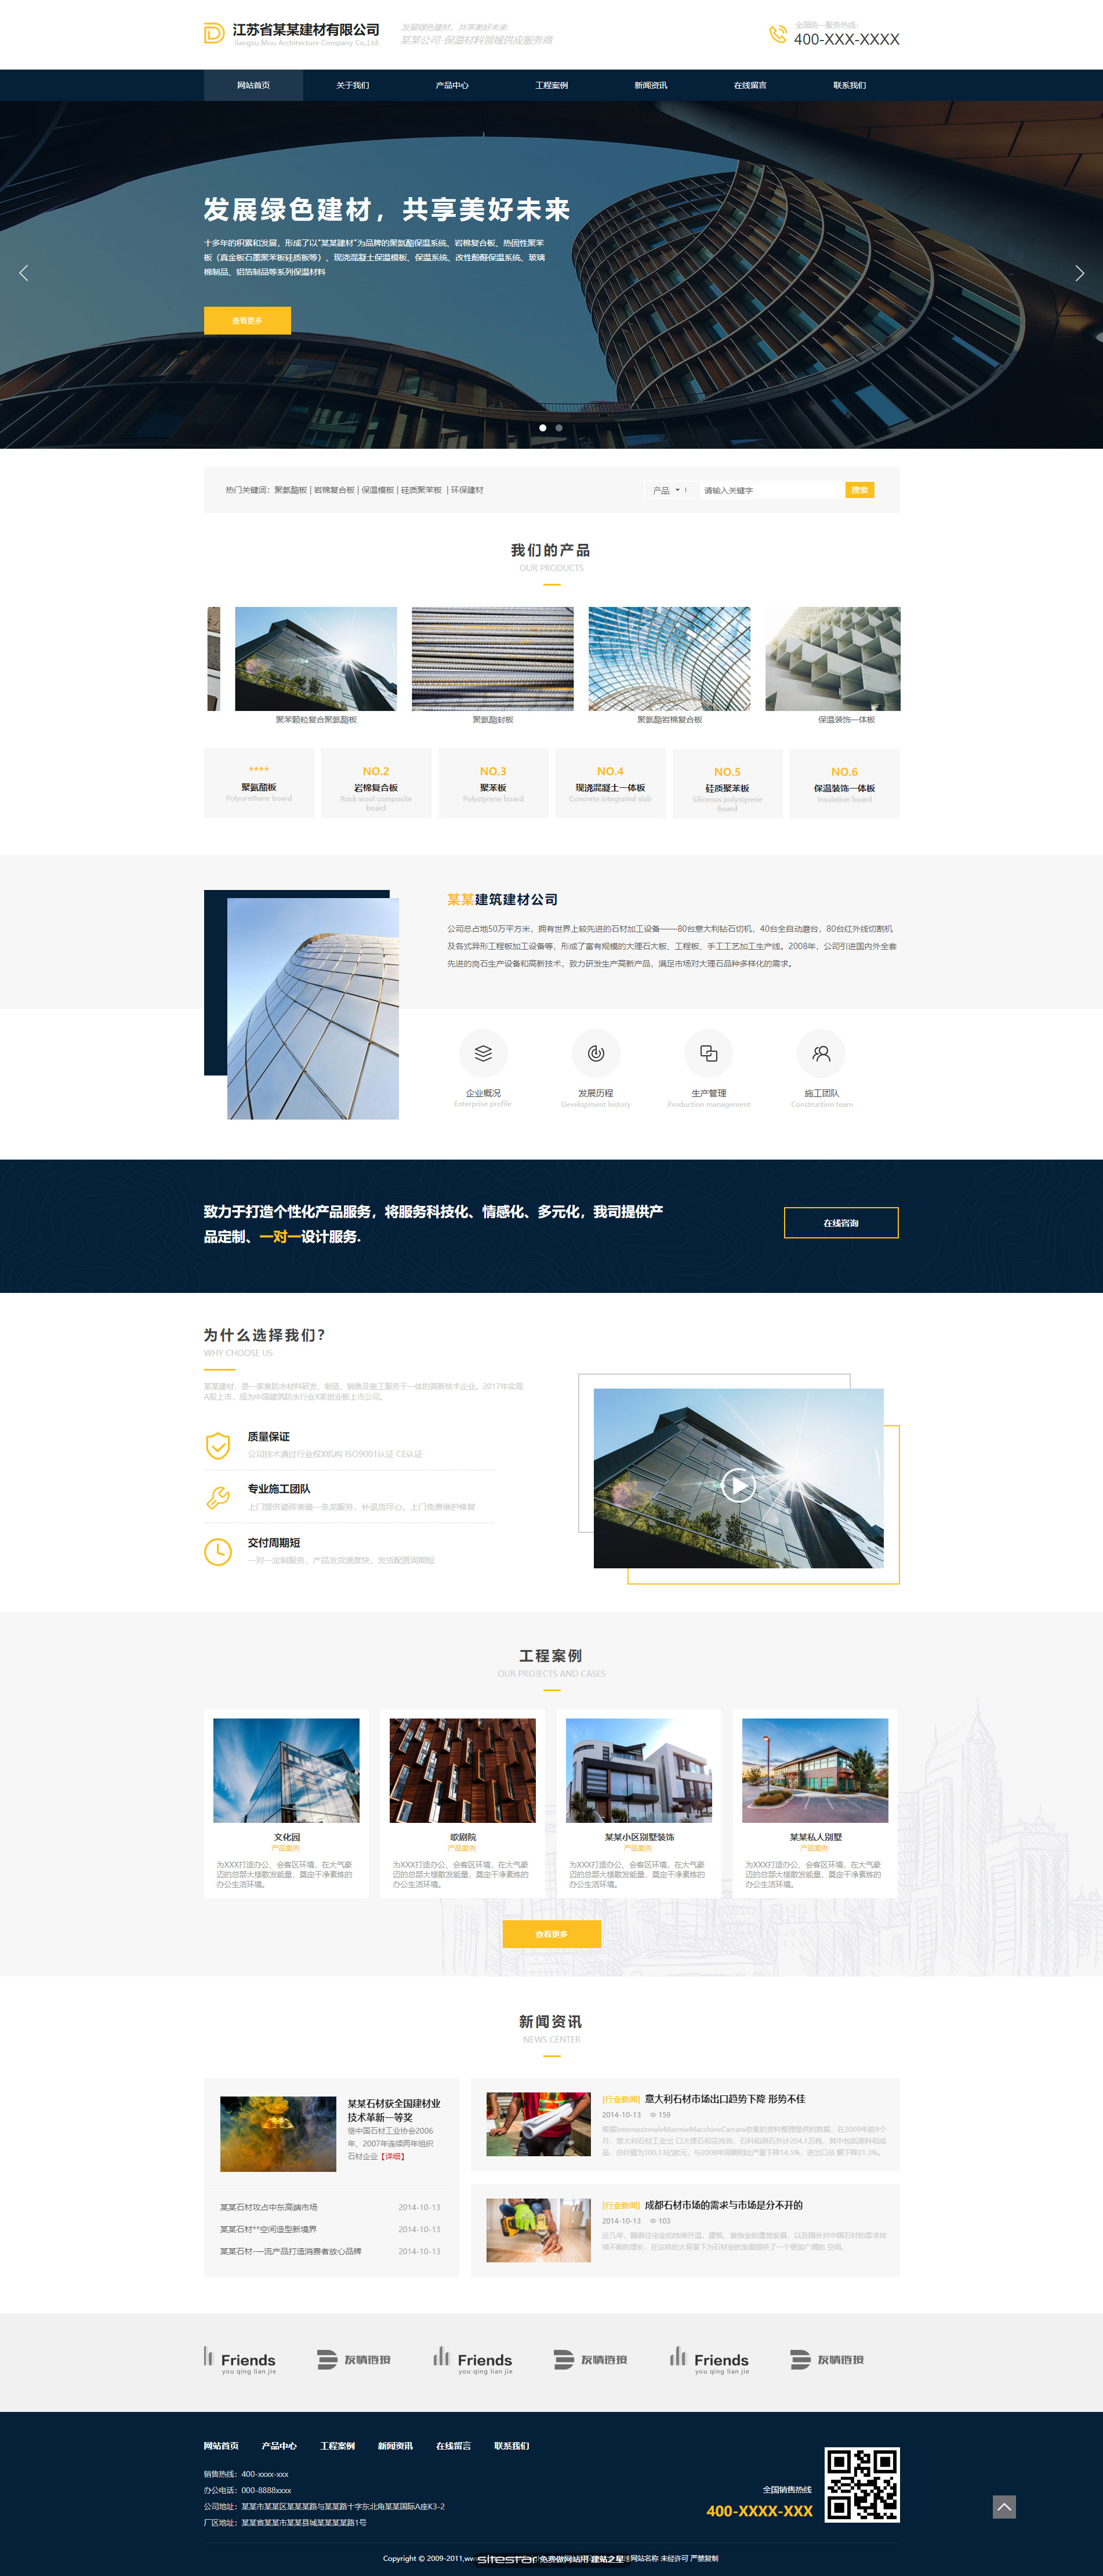 企业网站精美模板-architecture-1124060